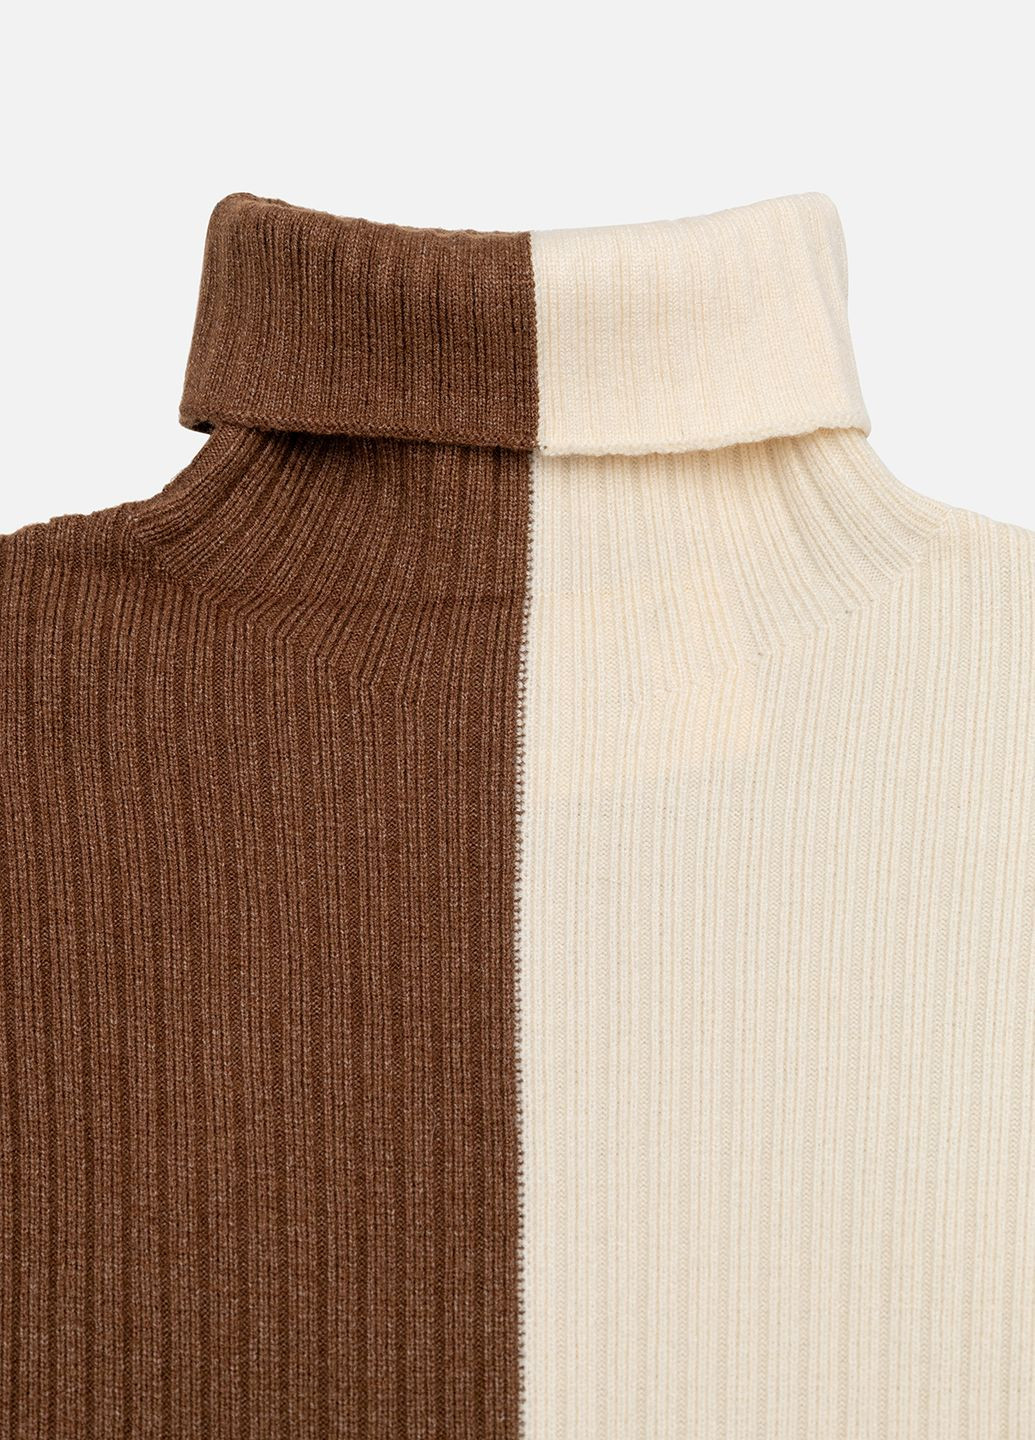 Коричневый зимний свитер для девочки цвет коричневый цб-00220734 Lizi Kids